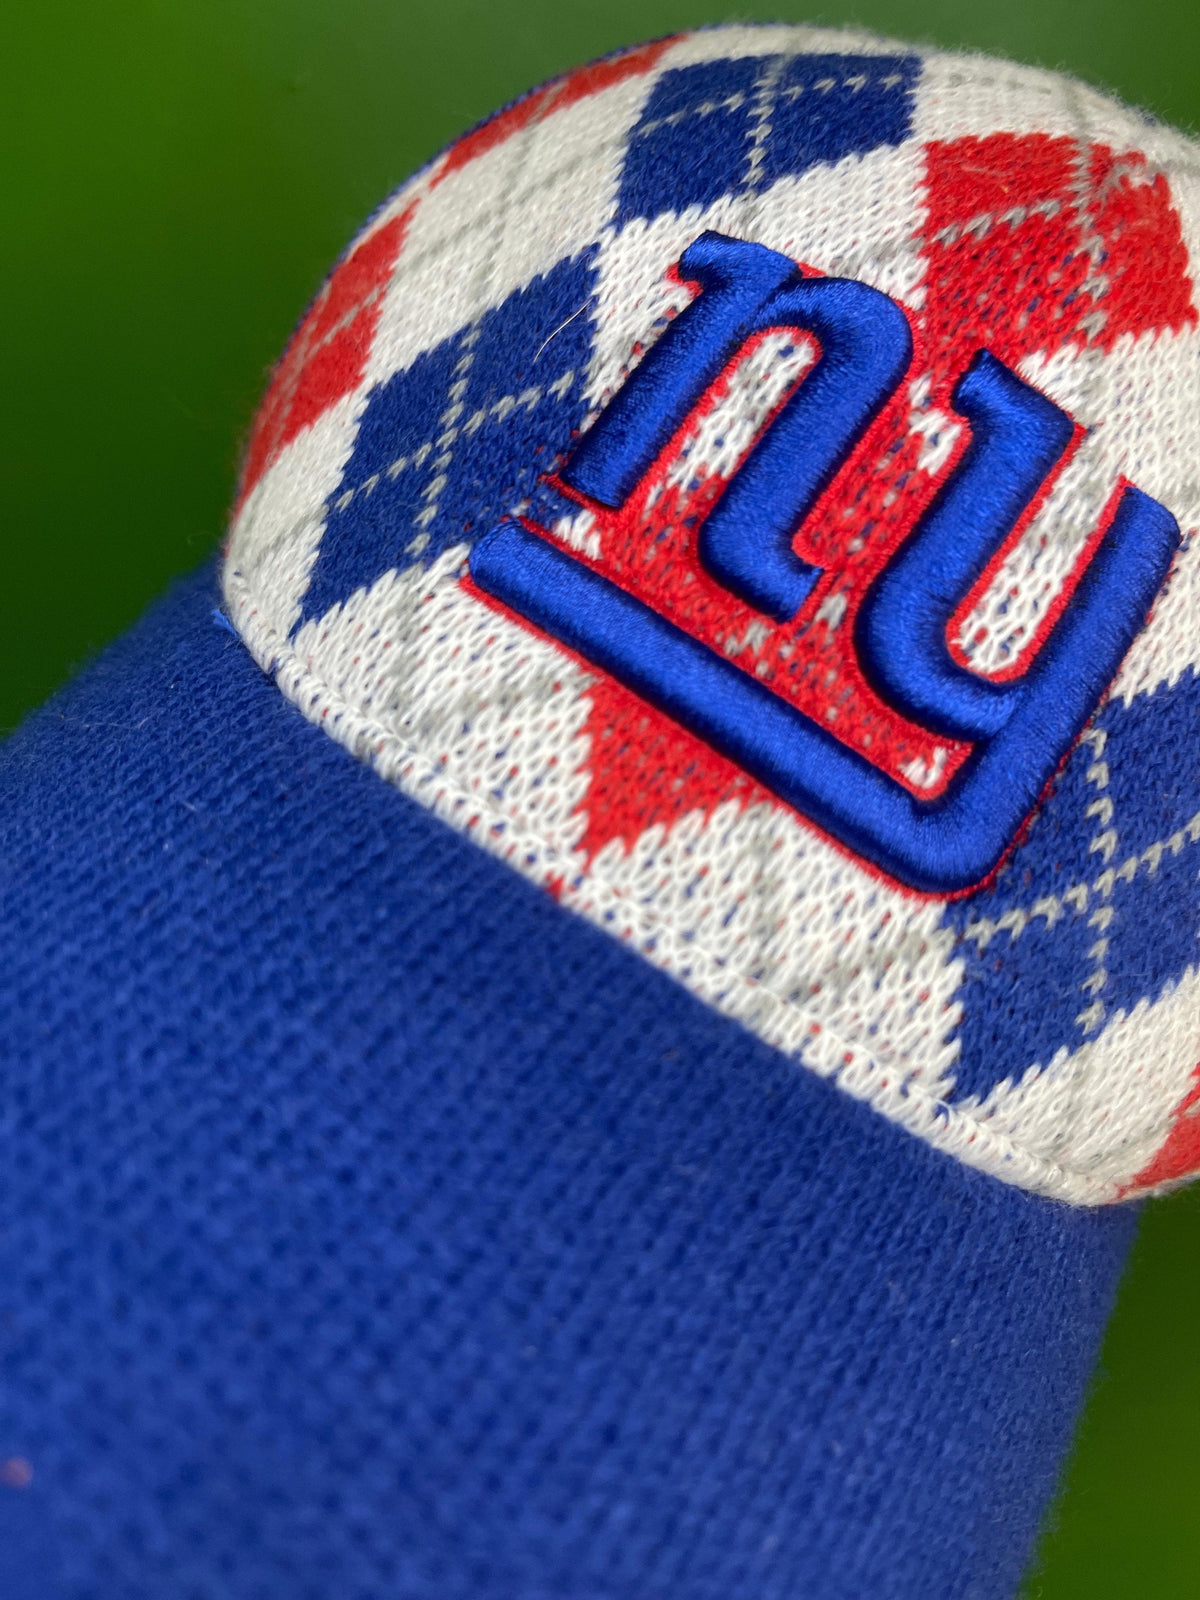 NFL New York Giants Reebok Vintage Baseball Cap/Hat Argyle Snapback OSFM